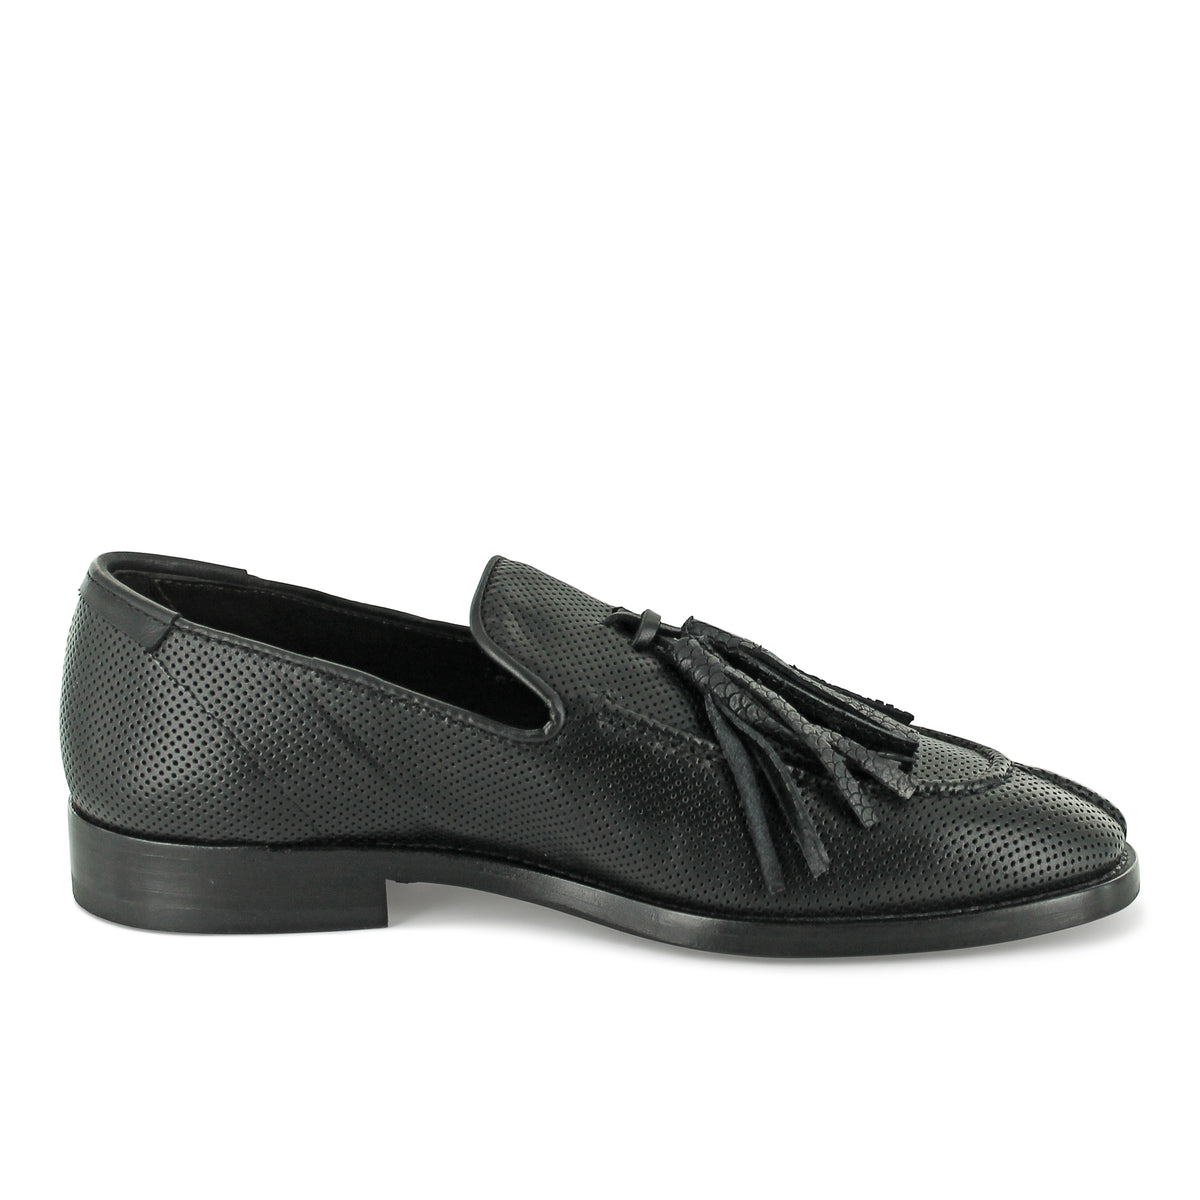 16/721 - Black Tassle Loafer